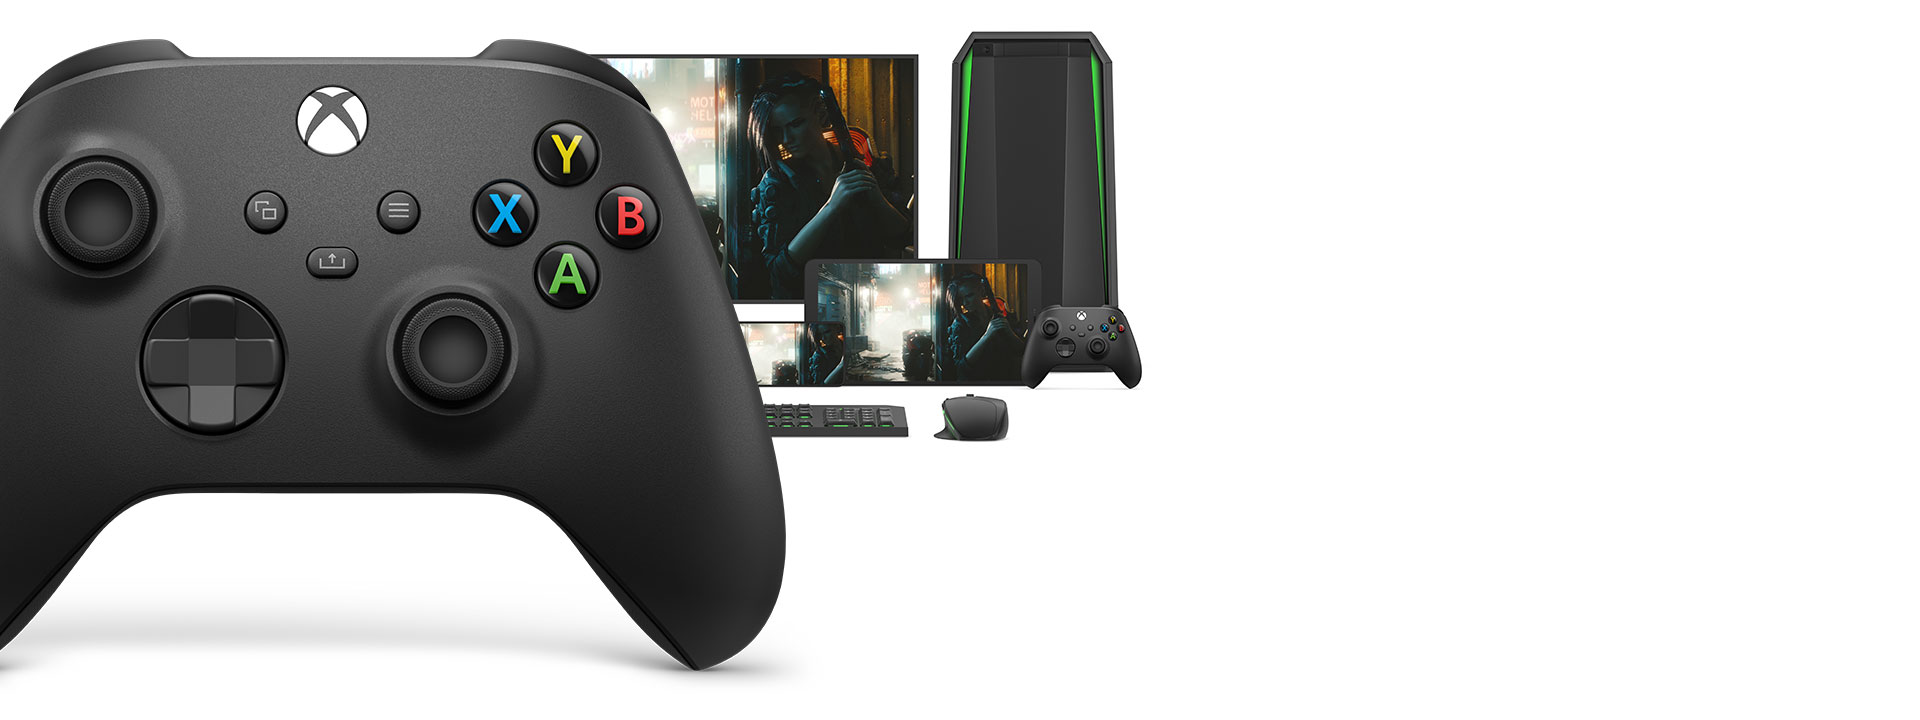 Tay cầm chơi game Xbox Series X Controller - Carbon Black + USB-C Cable - Hàng chính hãng dễ dàng chuyển đổi qua các thiết bị khác nhau